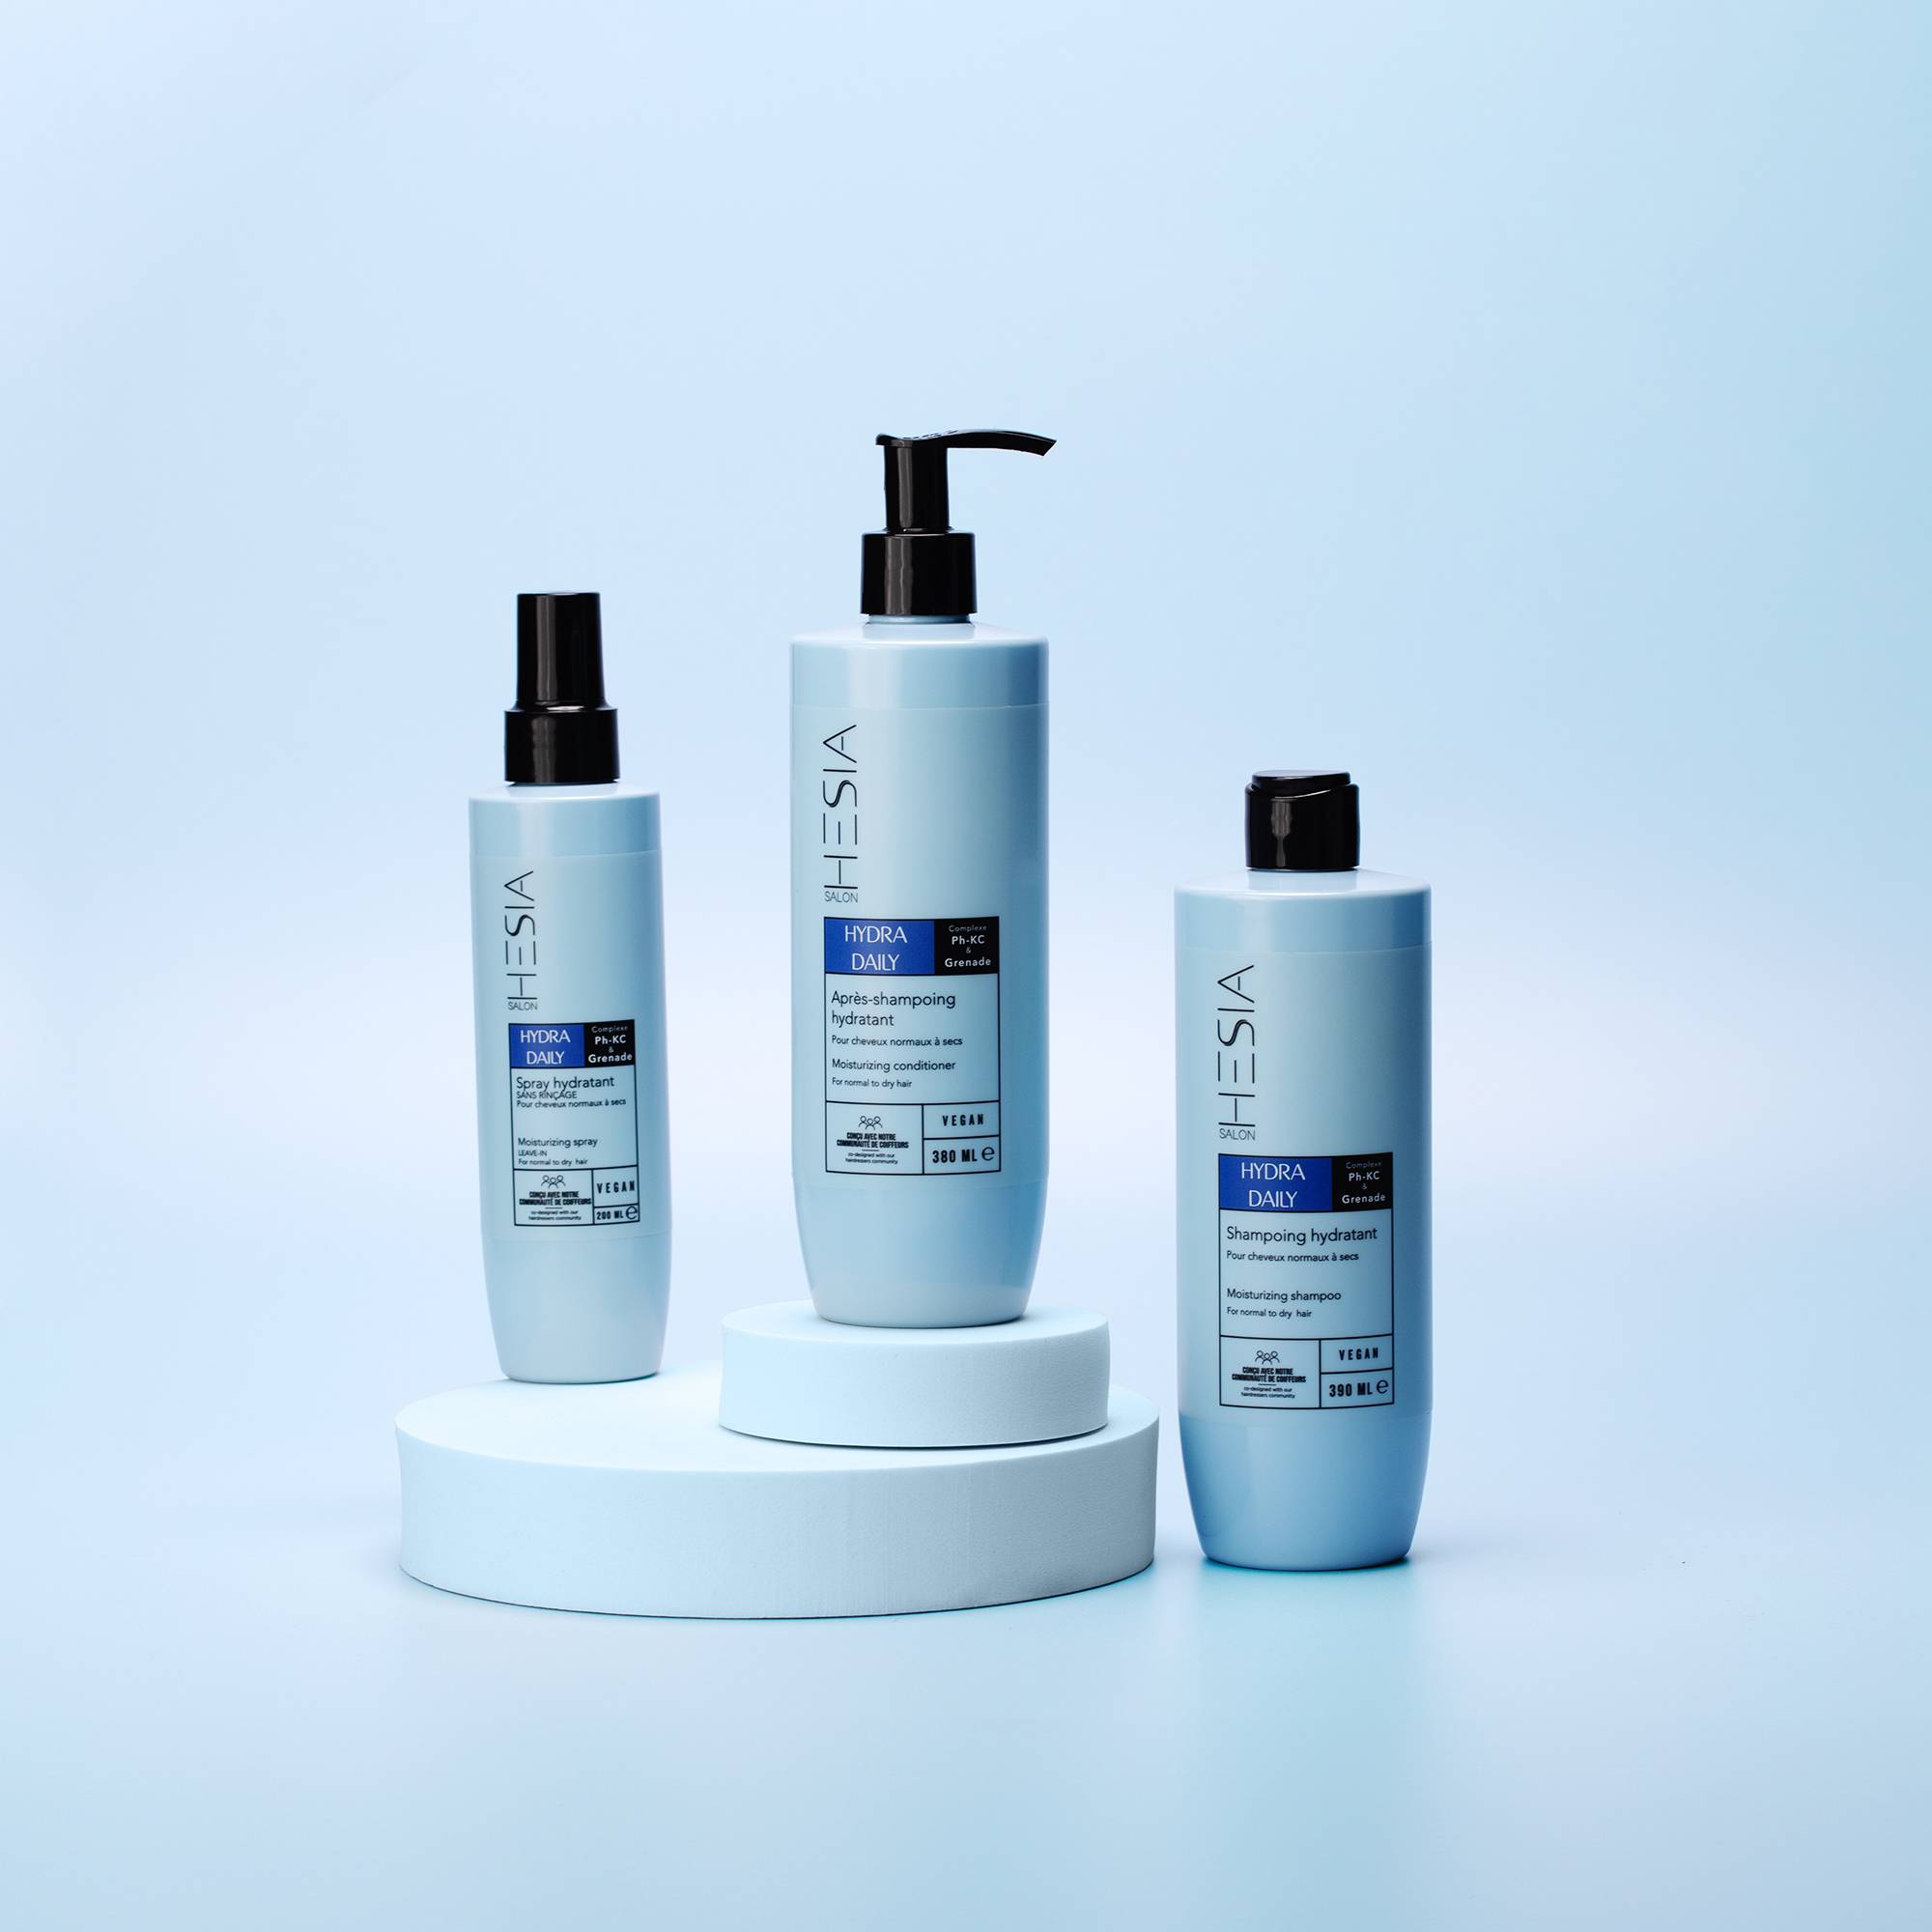 Après-shampoing hydratant Hydra Daily de la marque HESIA Salon Contenance 380ml - 6